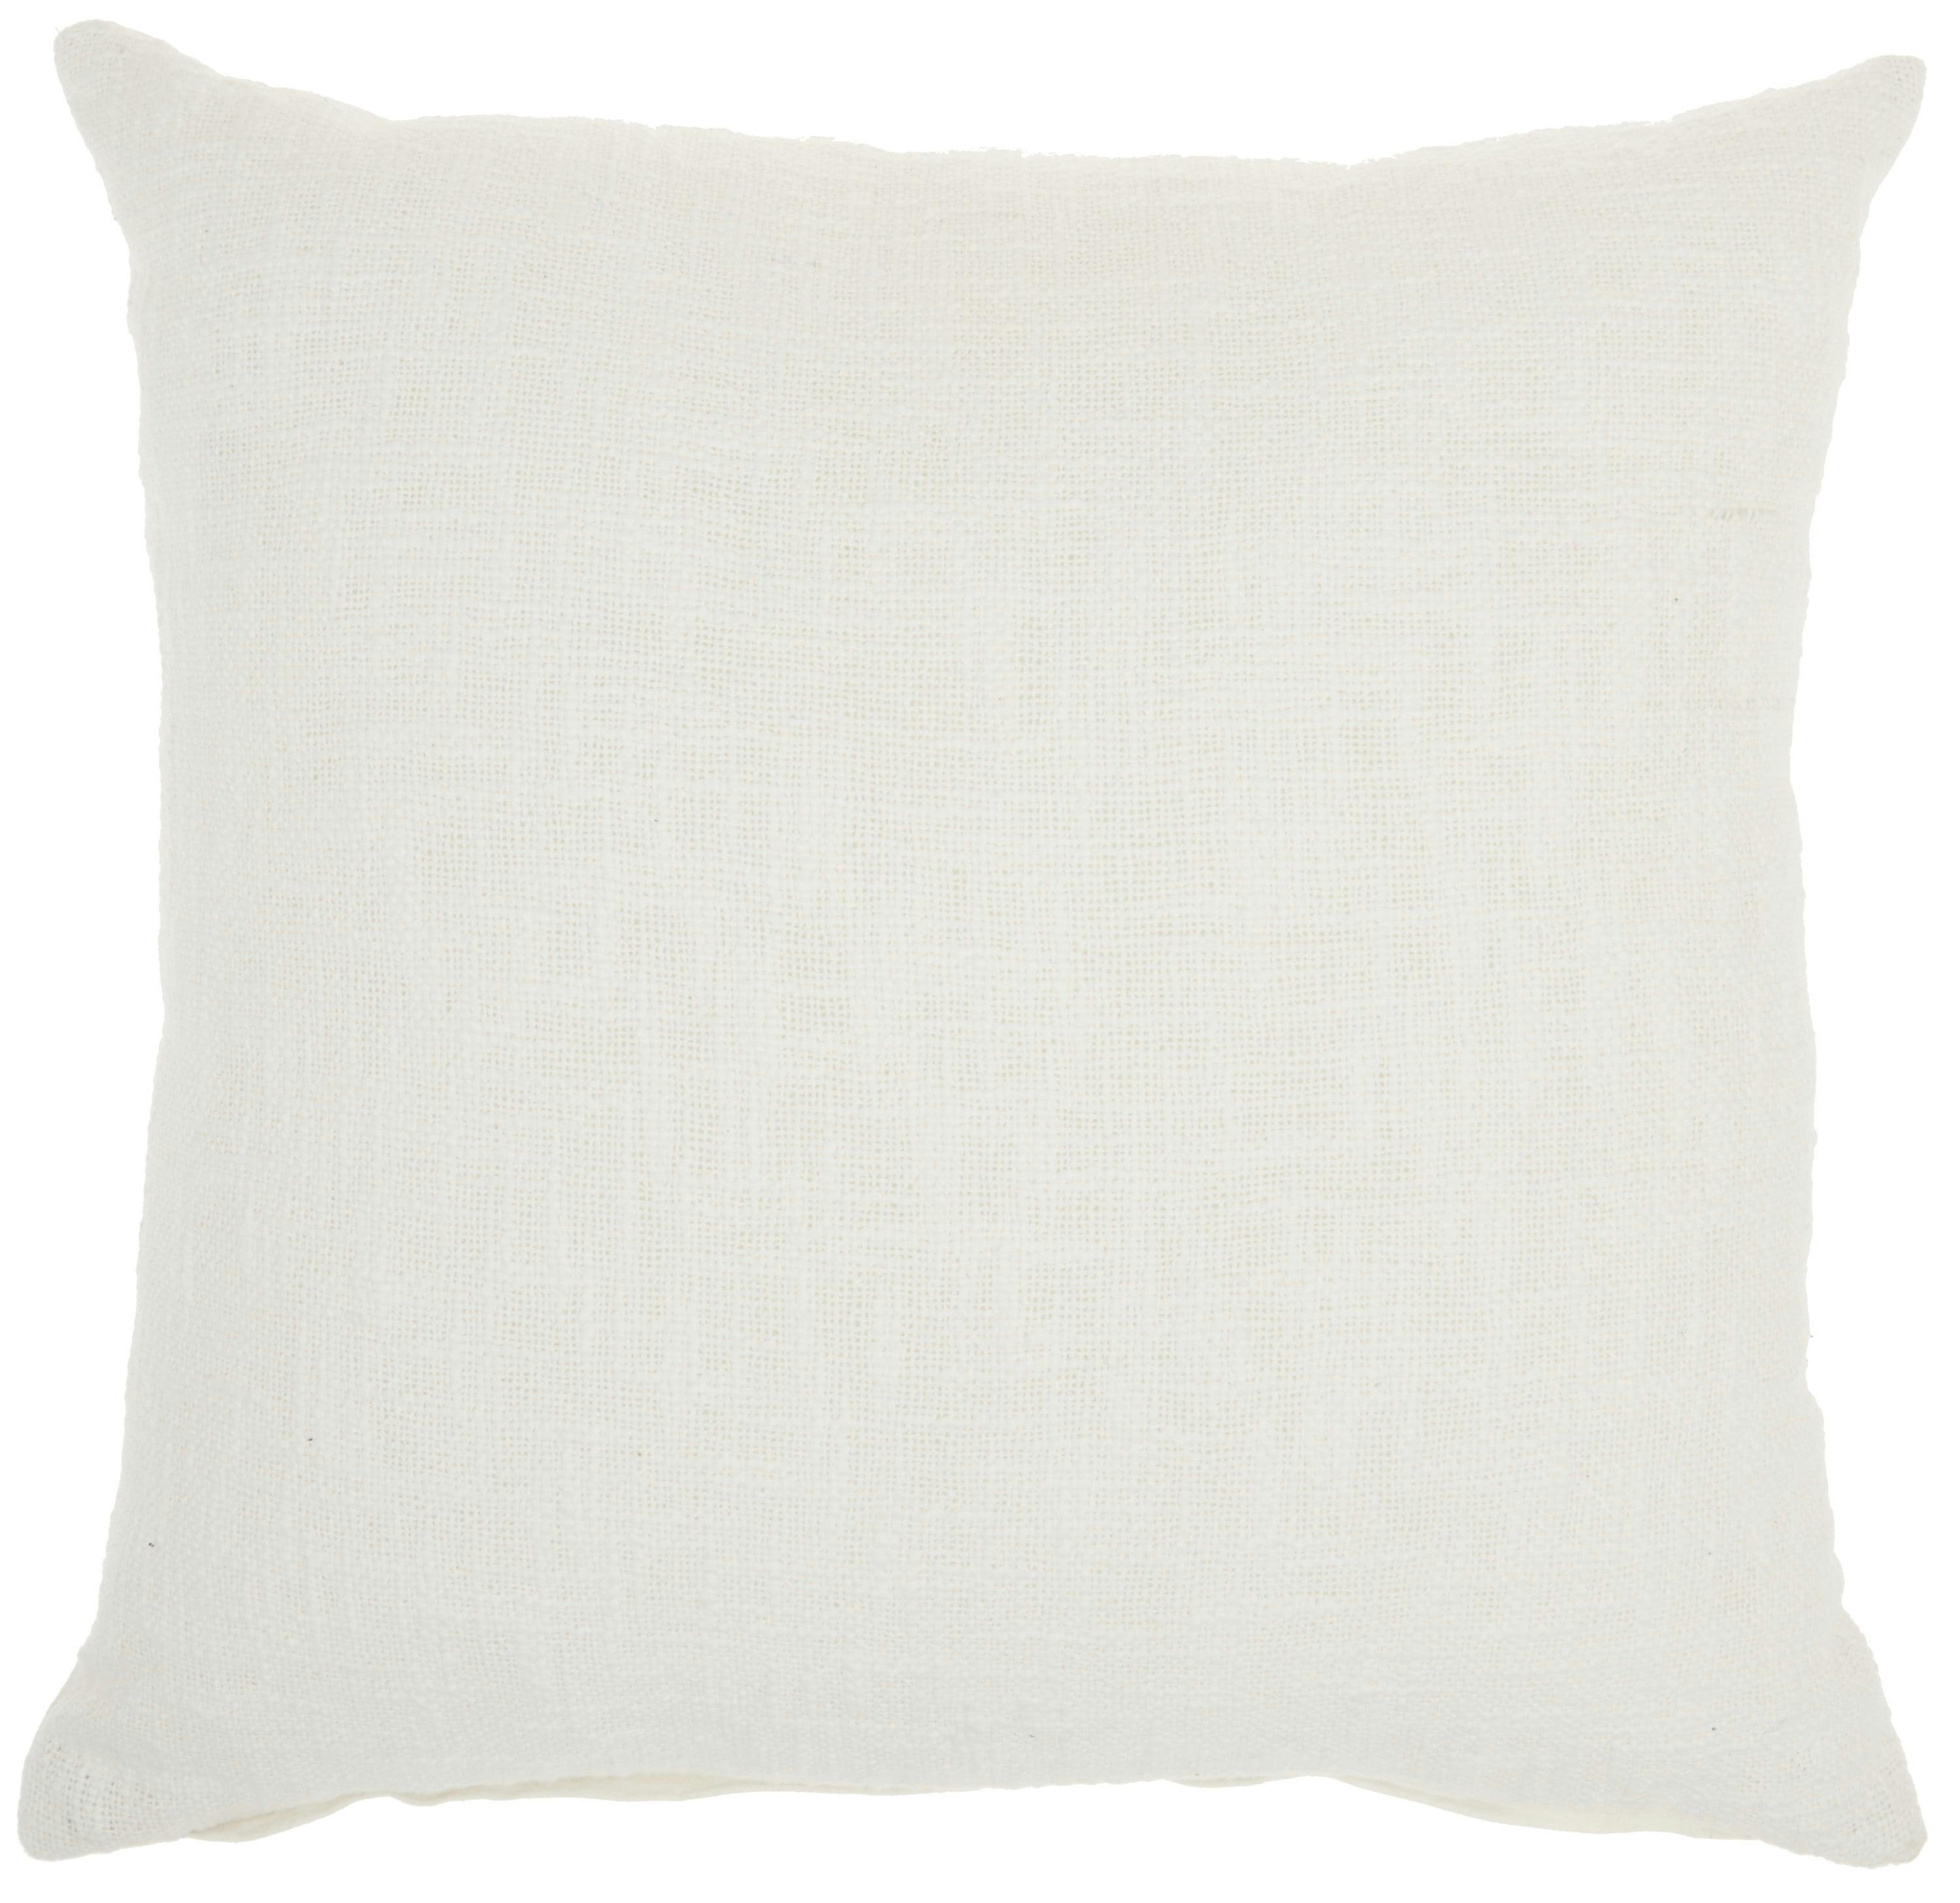 Classic White Woven Cotton 18" Square Throw Pillow